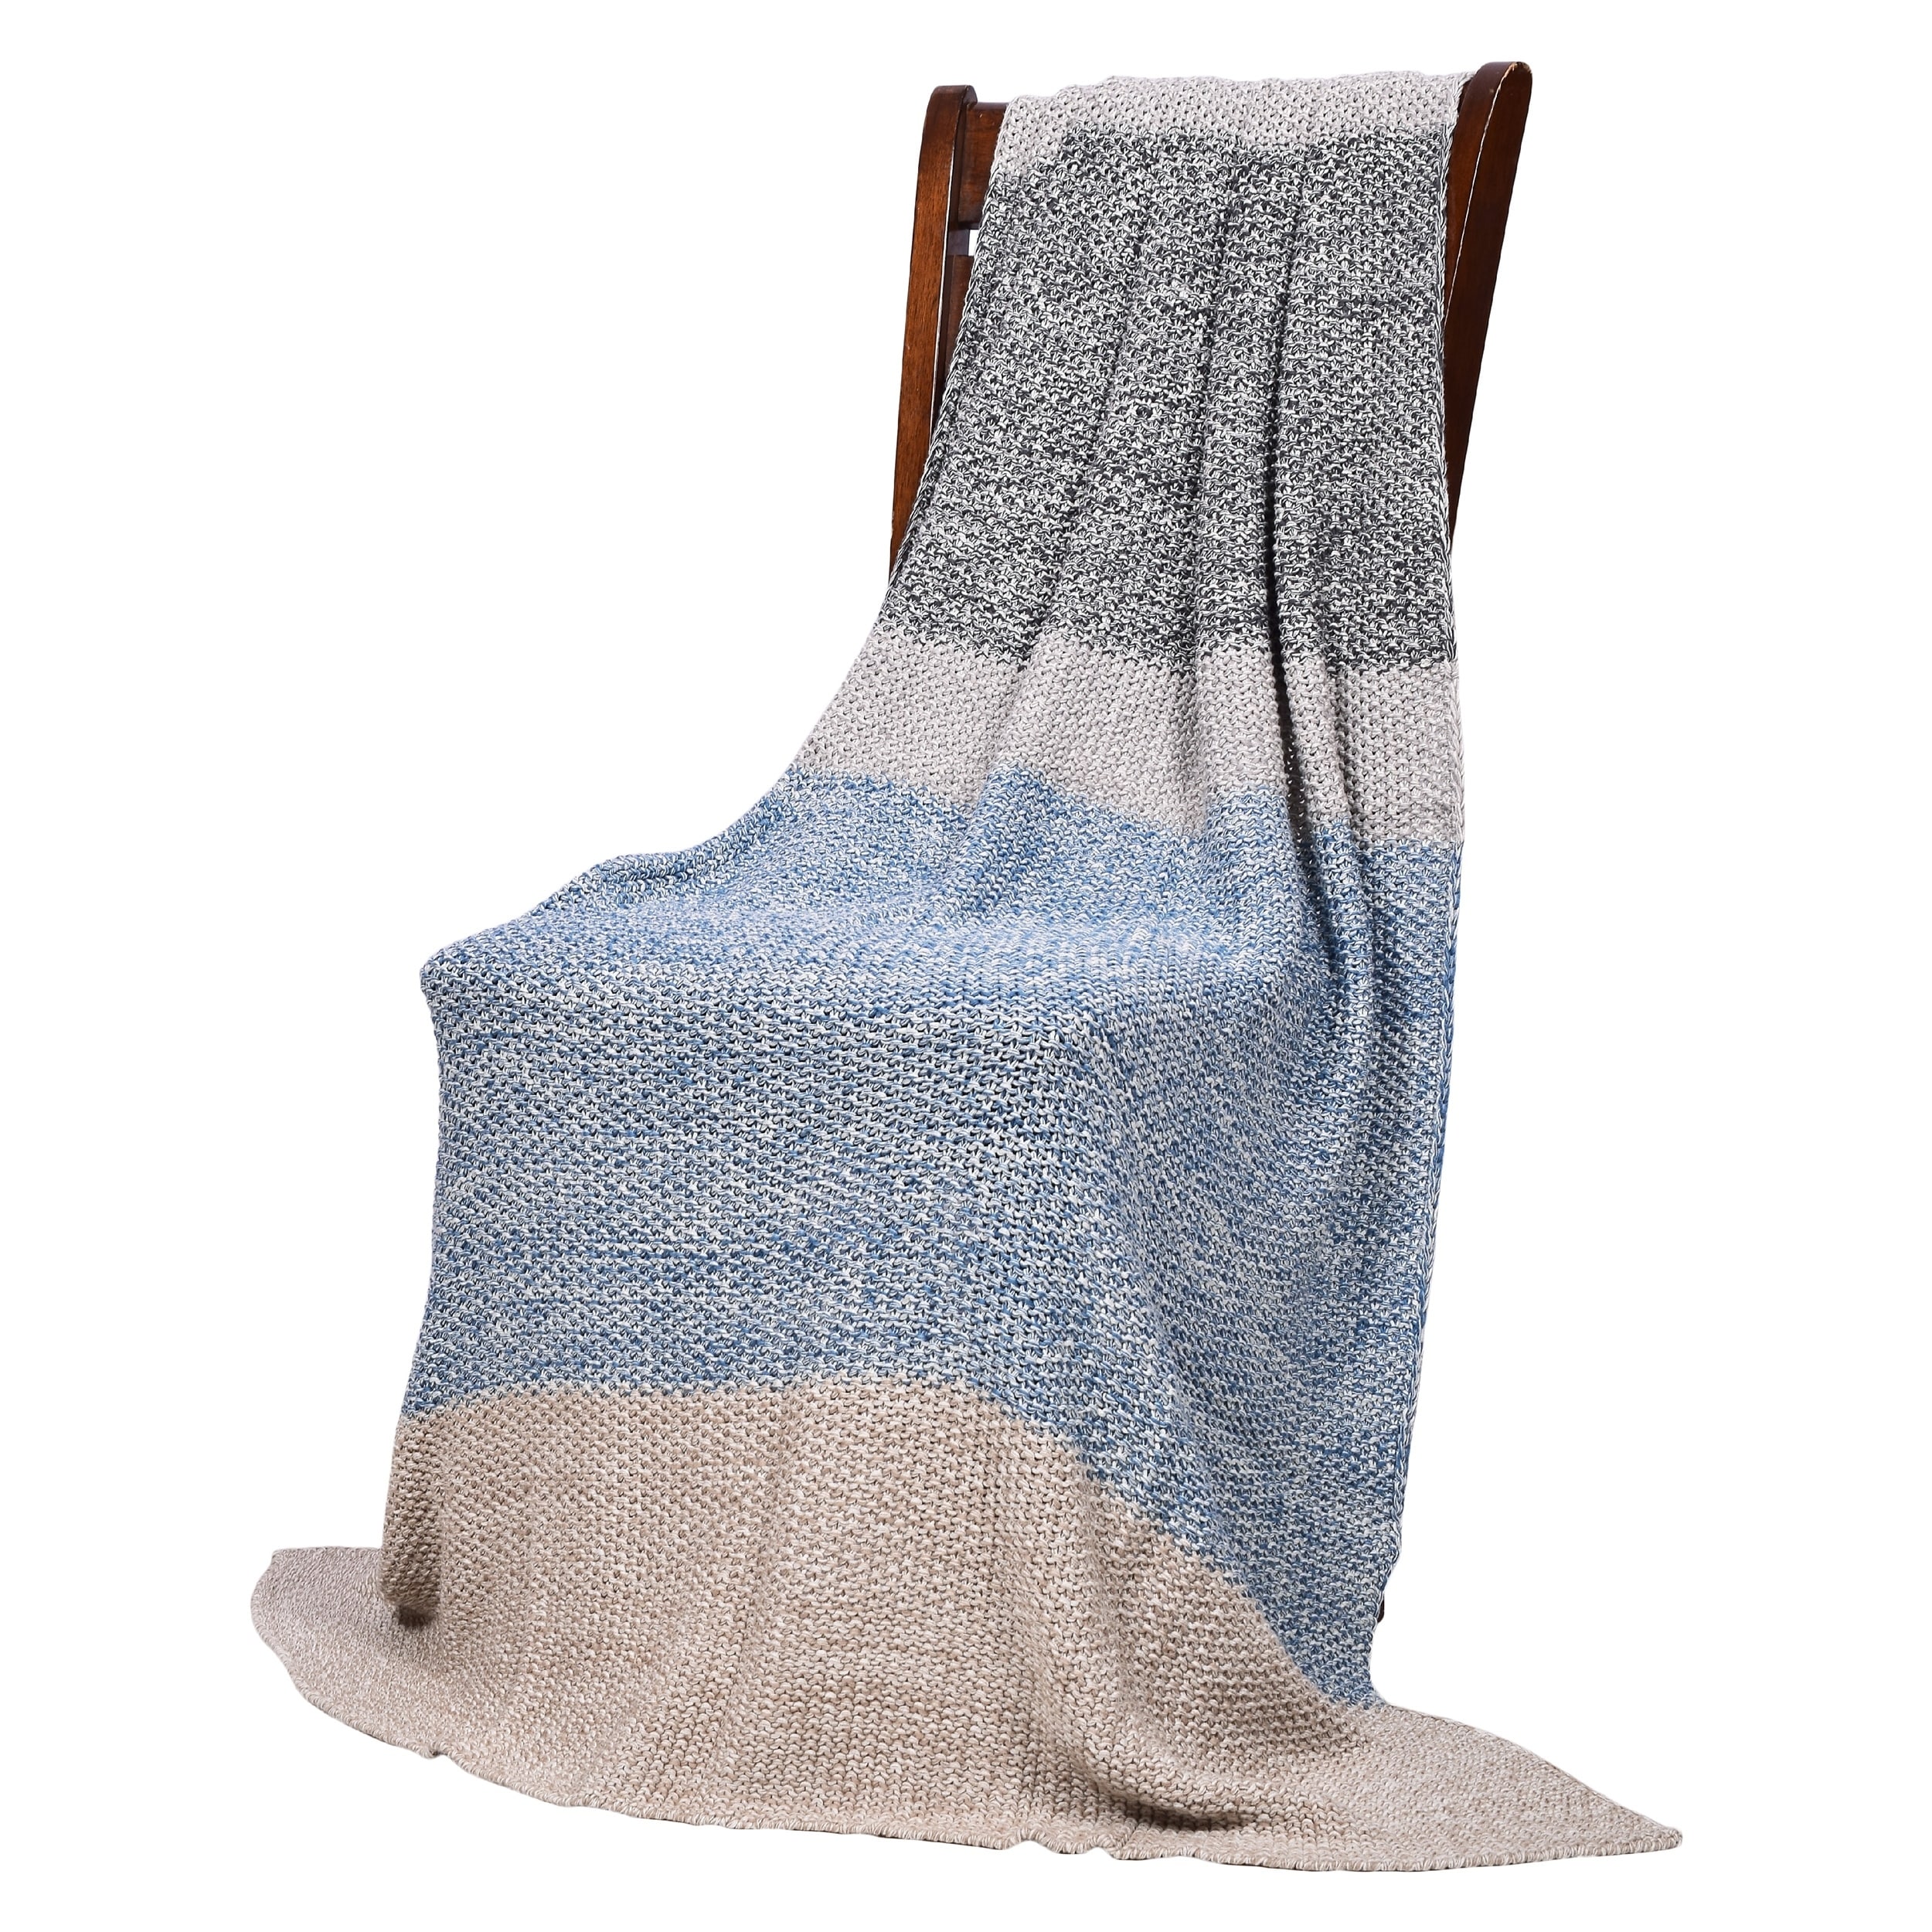 Vena Blue Grey Cotton Throw Blanket Overstock 25458310